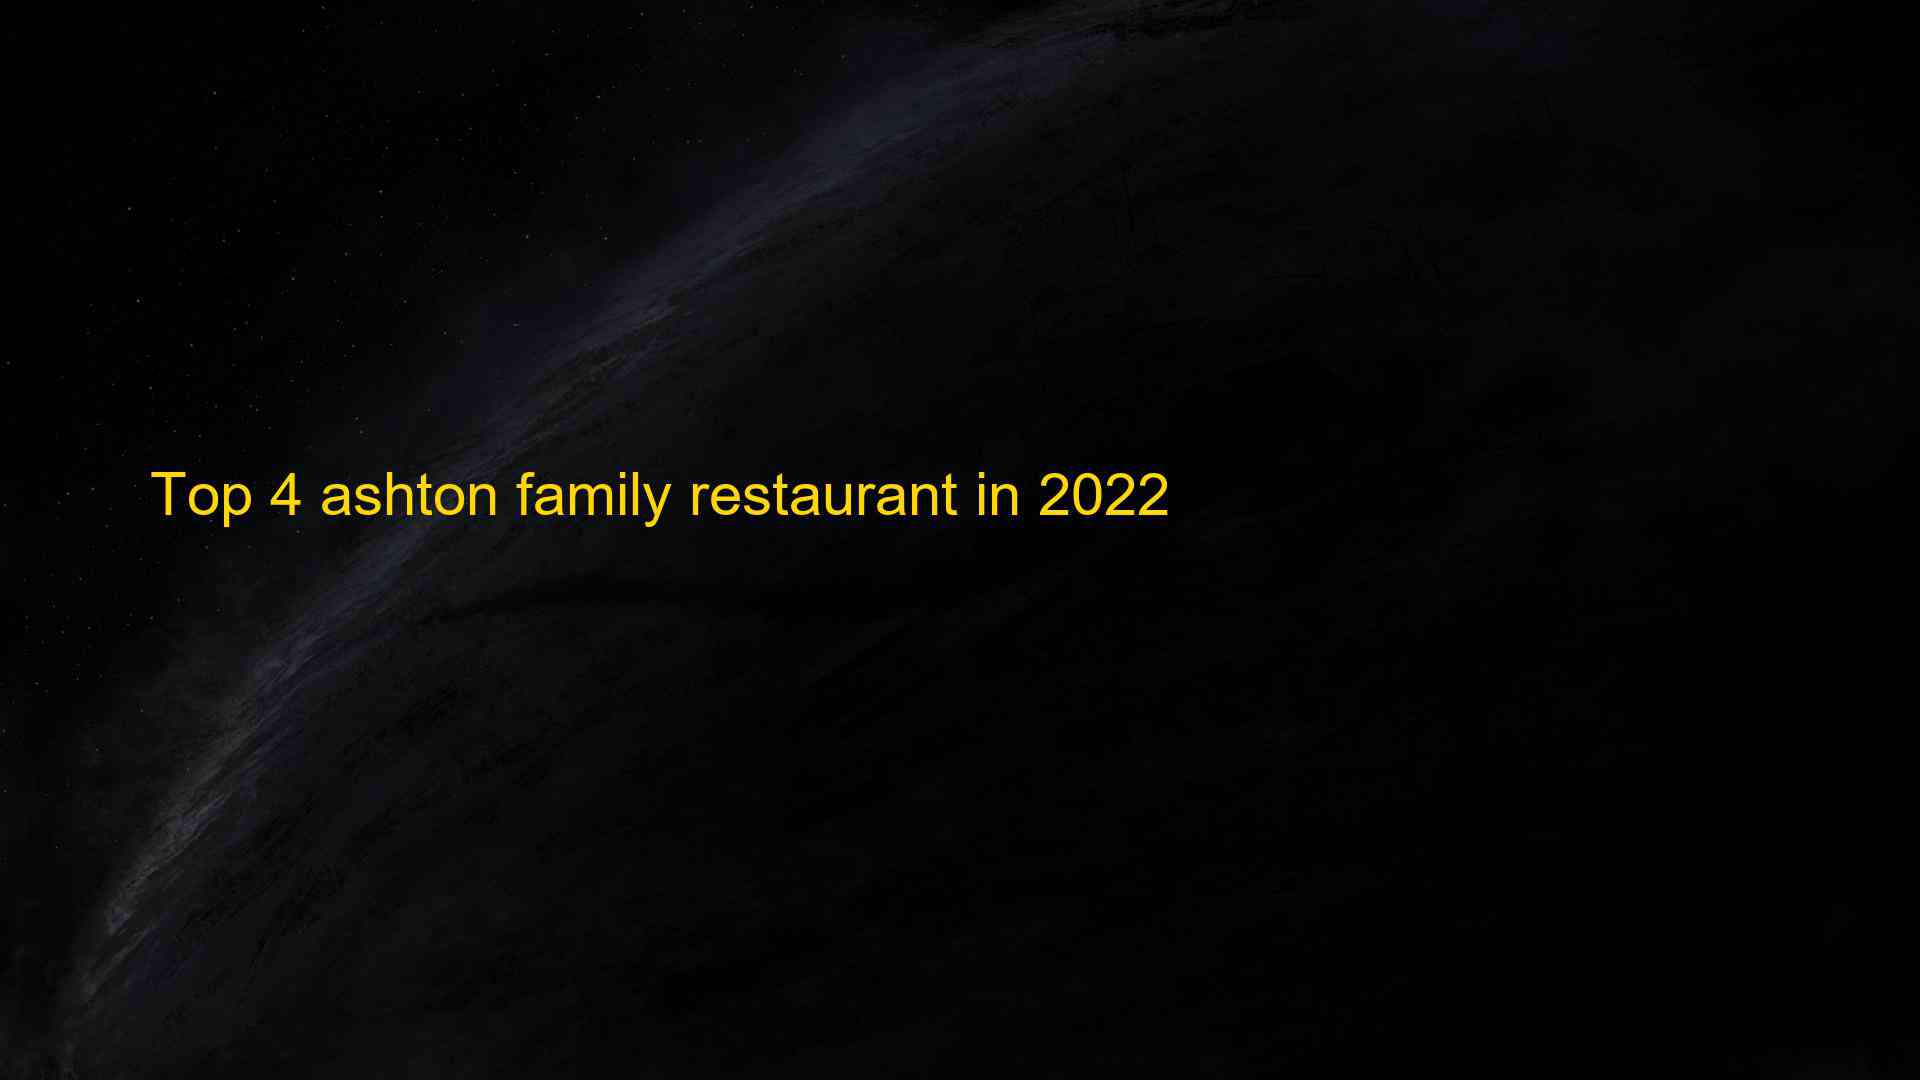 Top 4 ashton family restaurant in 2022 1662825447